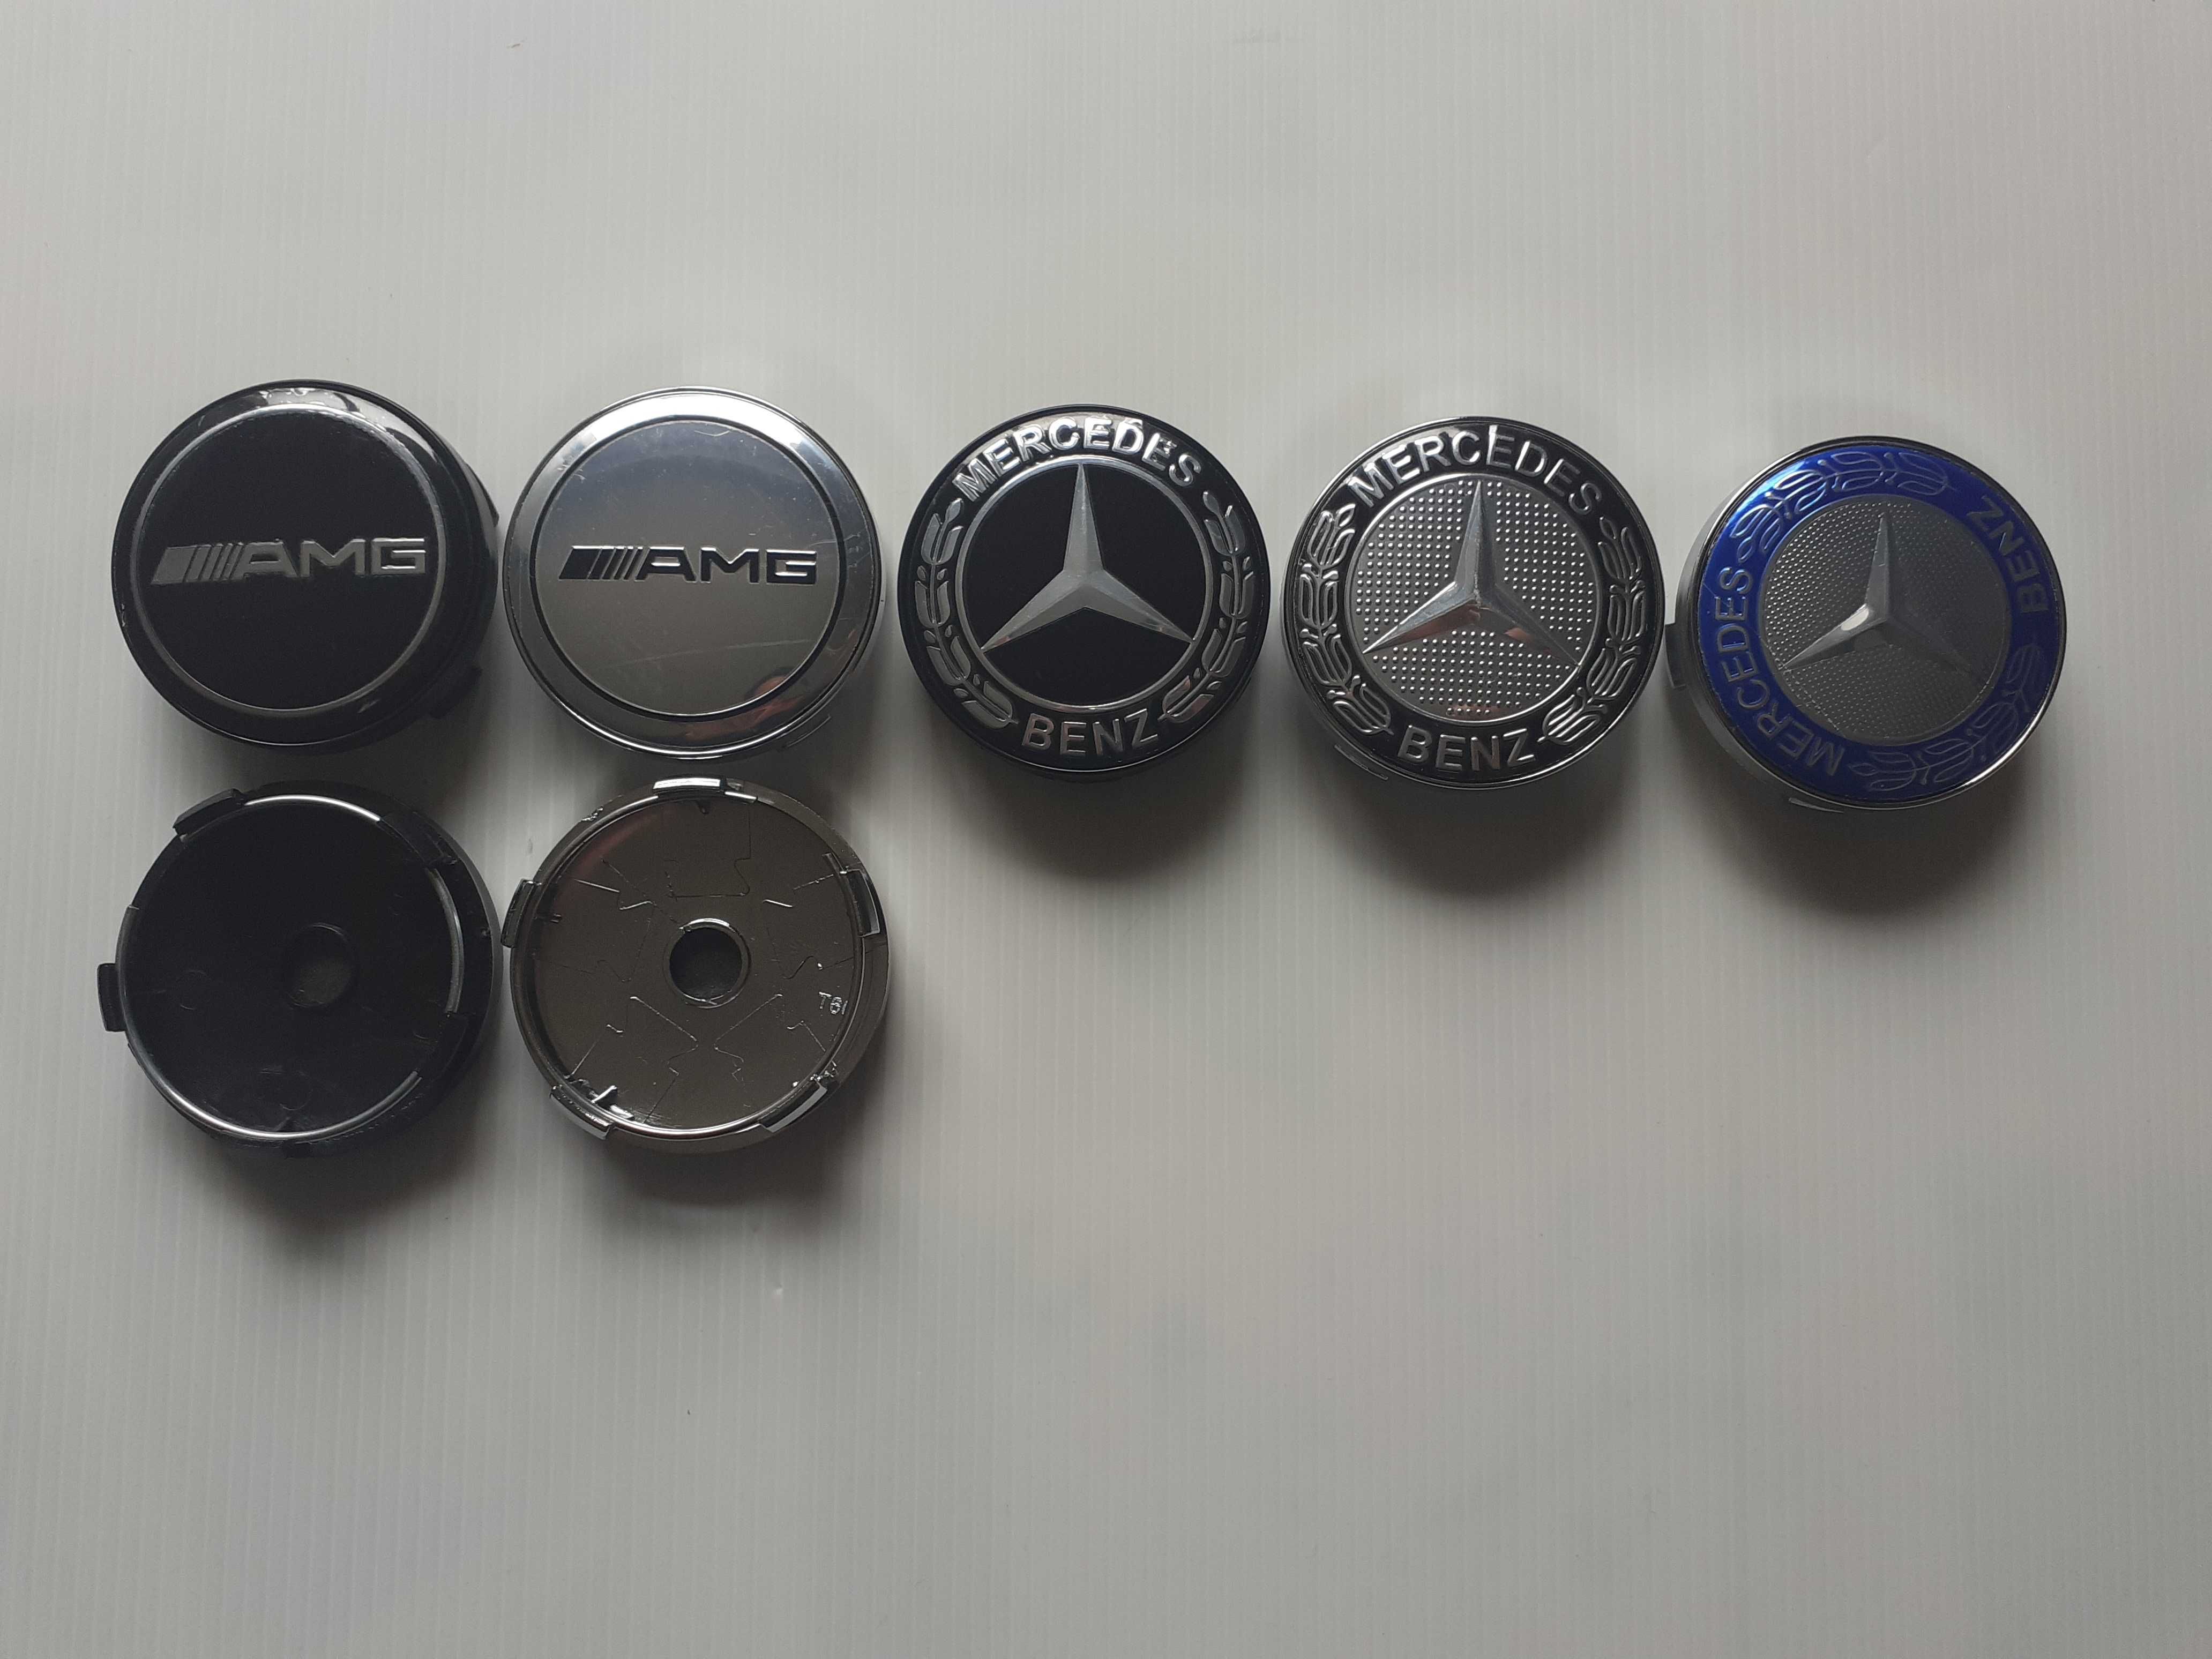 Centros/tampas de jante completos e emblemas Mercedes AMG